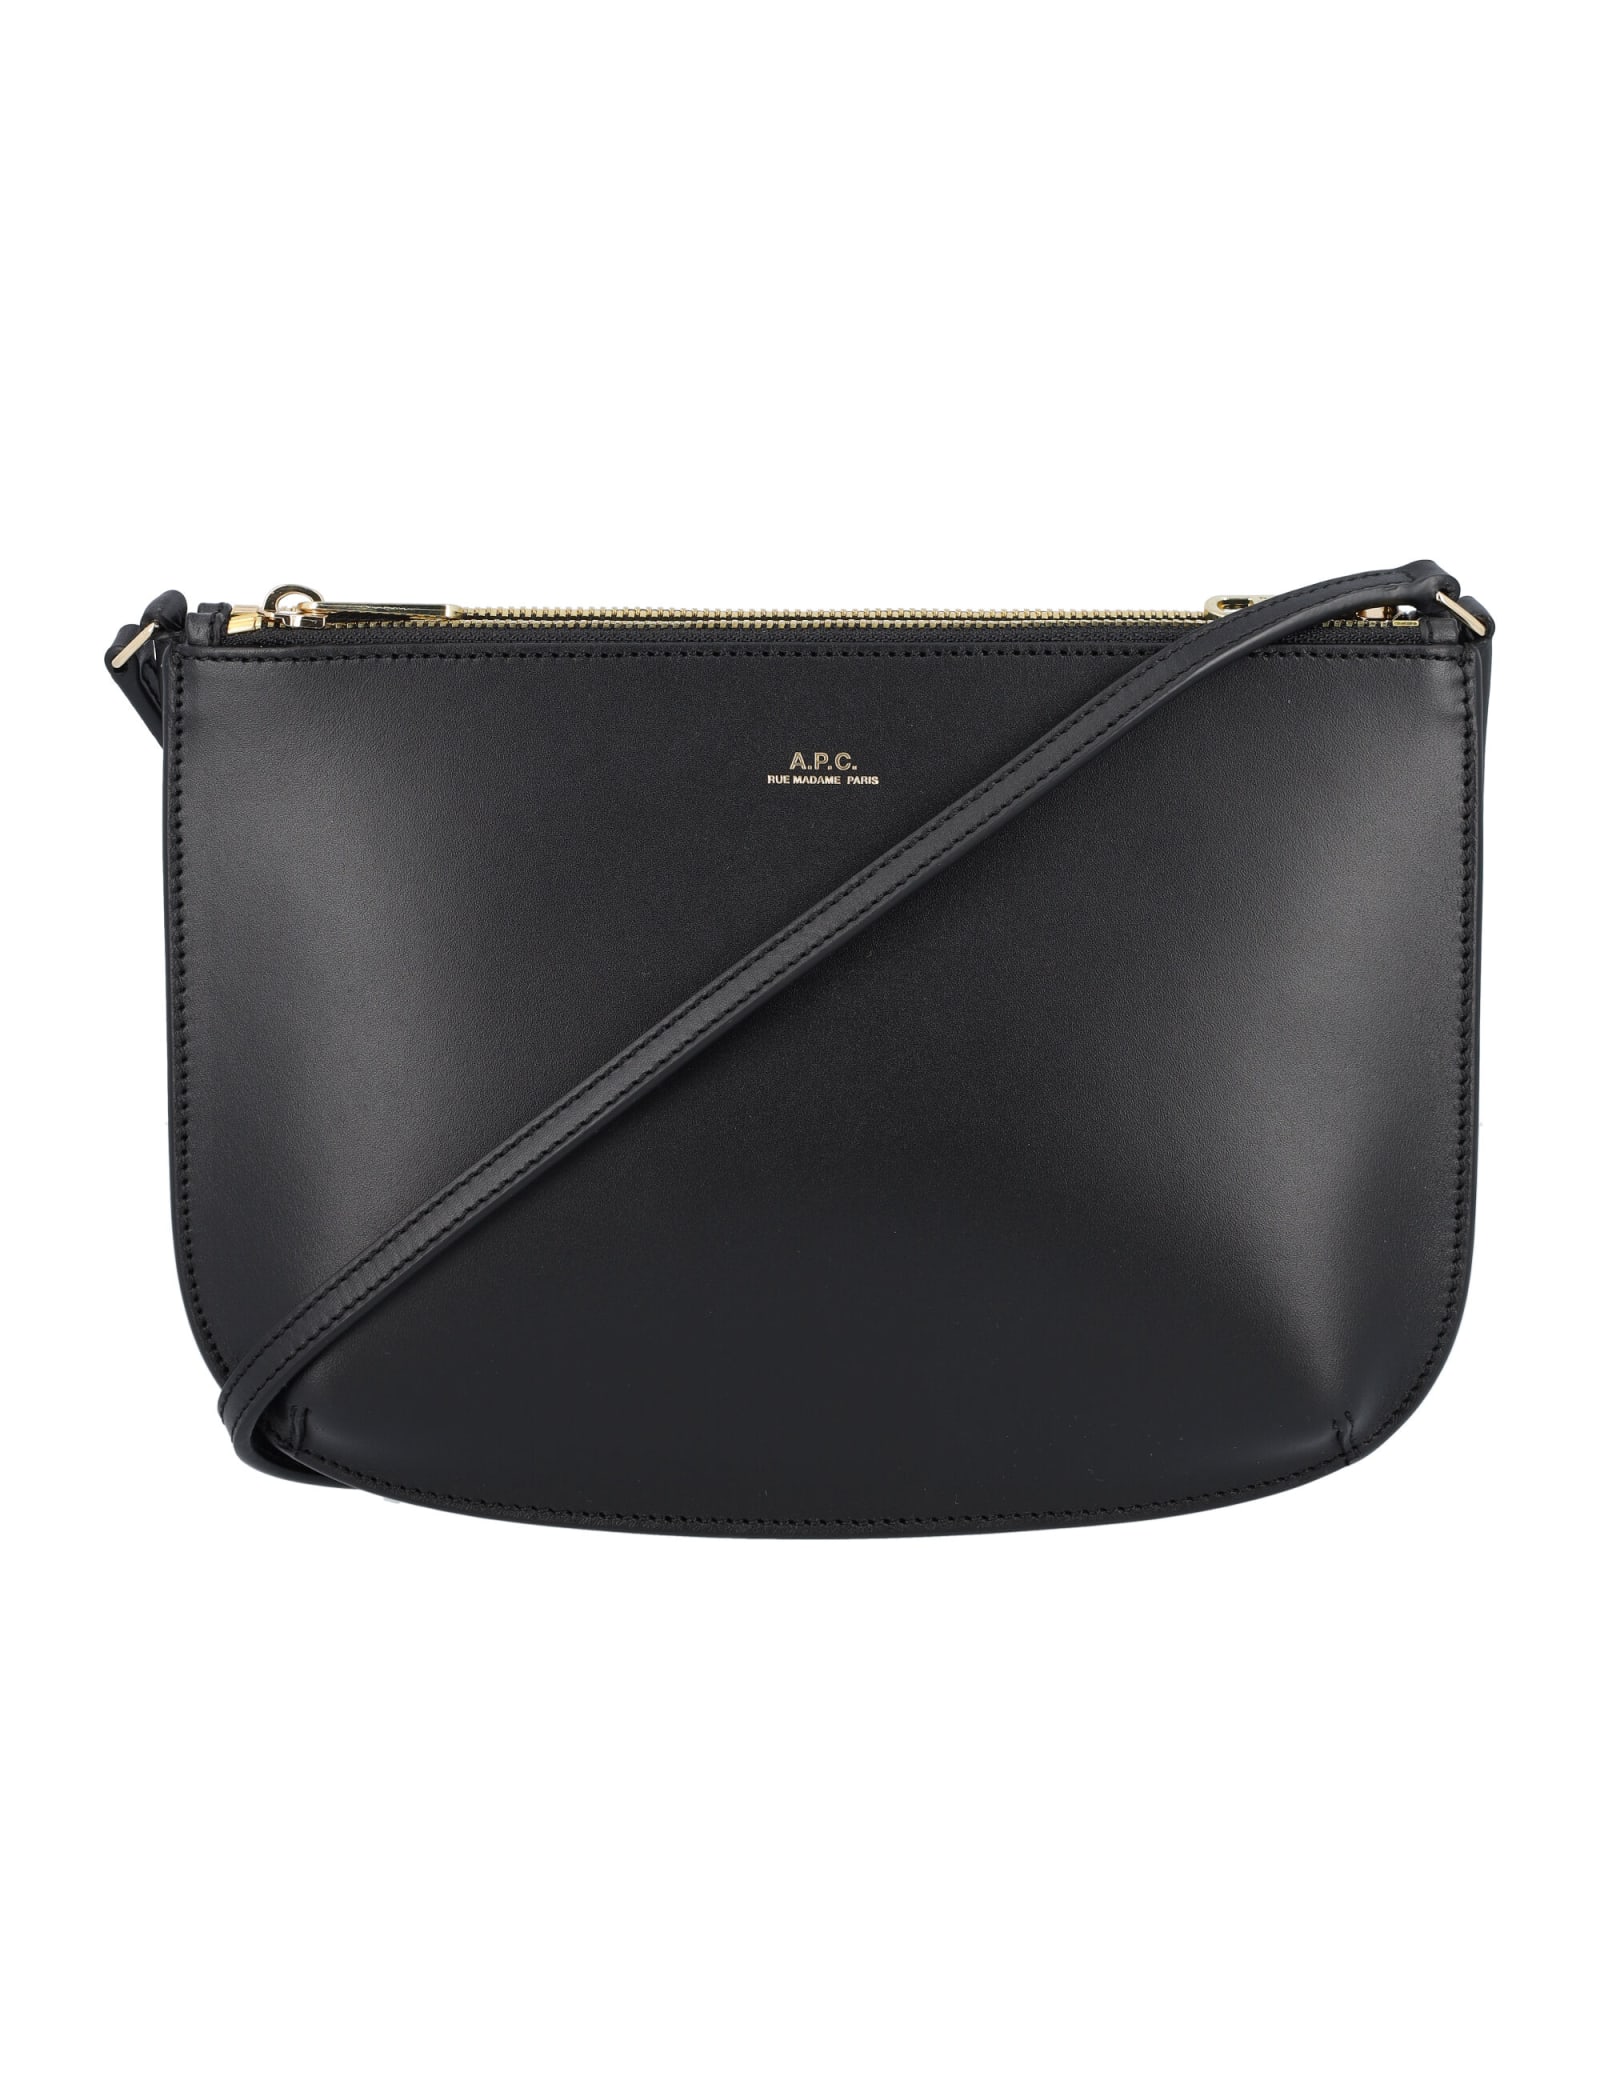 A.P.C. Black Sarah Shoulder Bag | Smart Closet